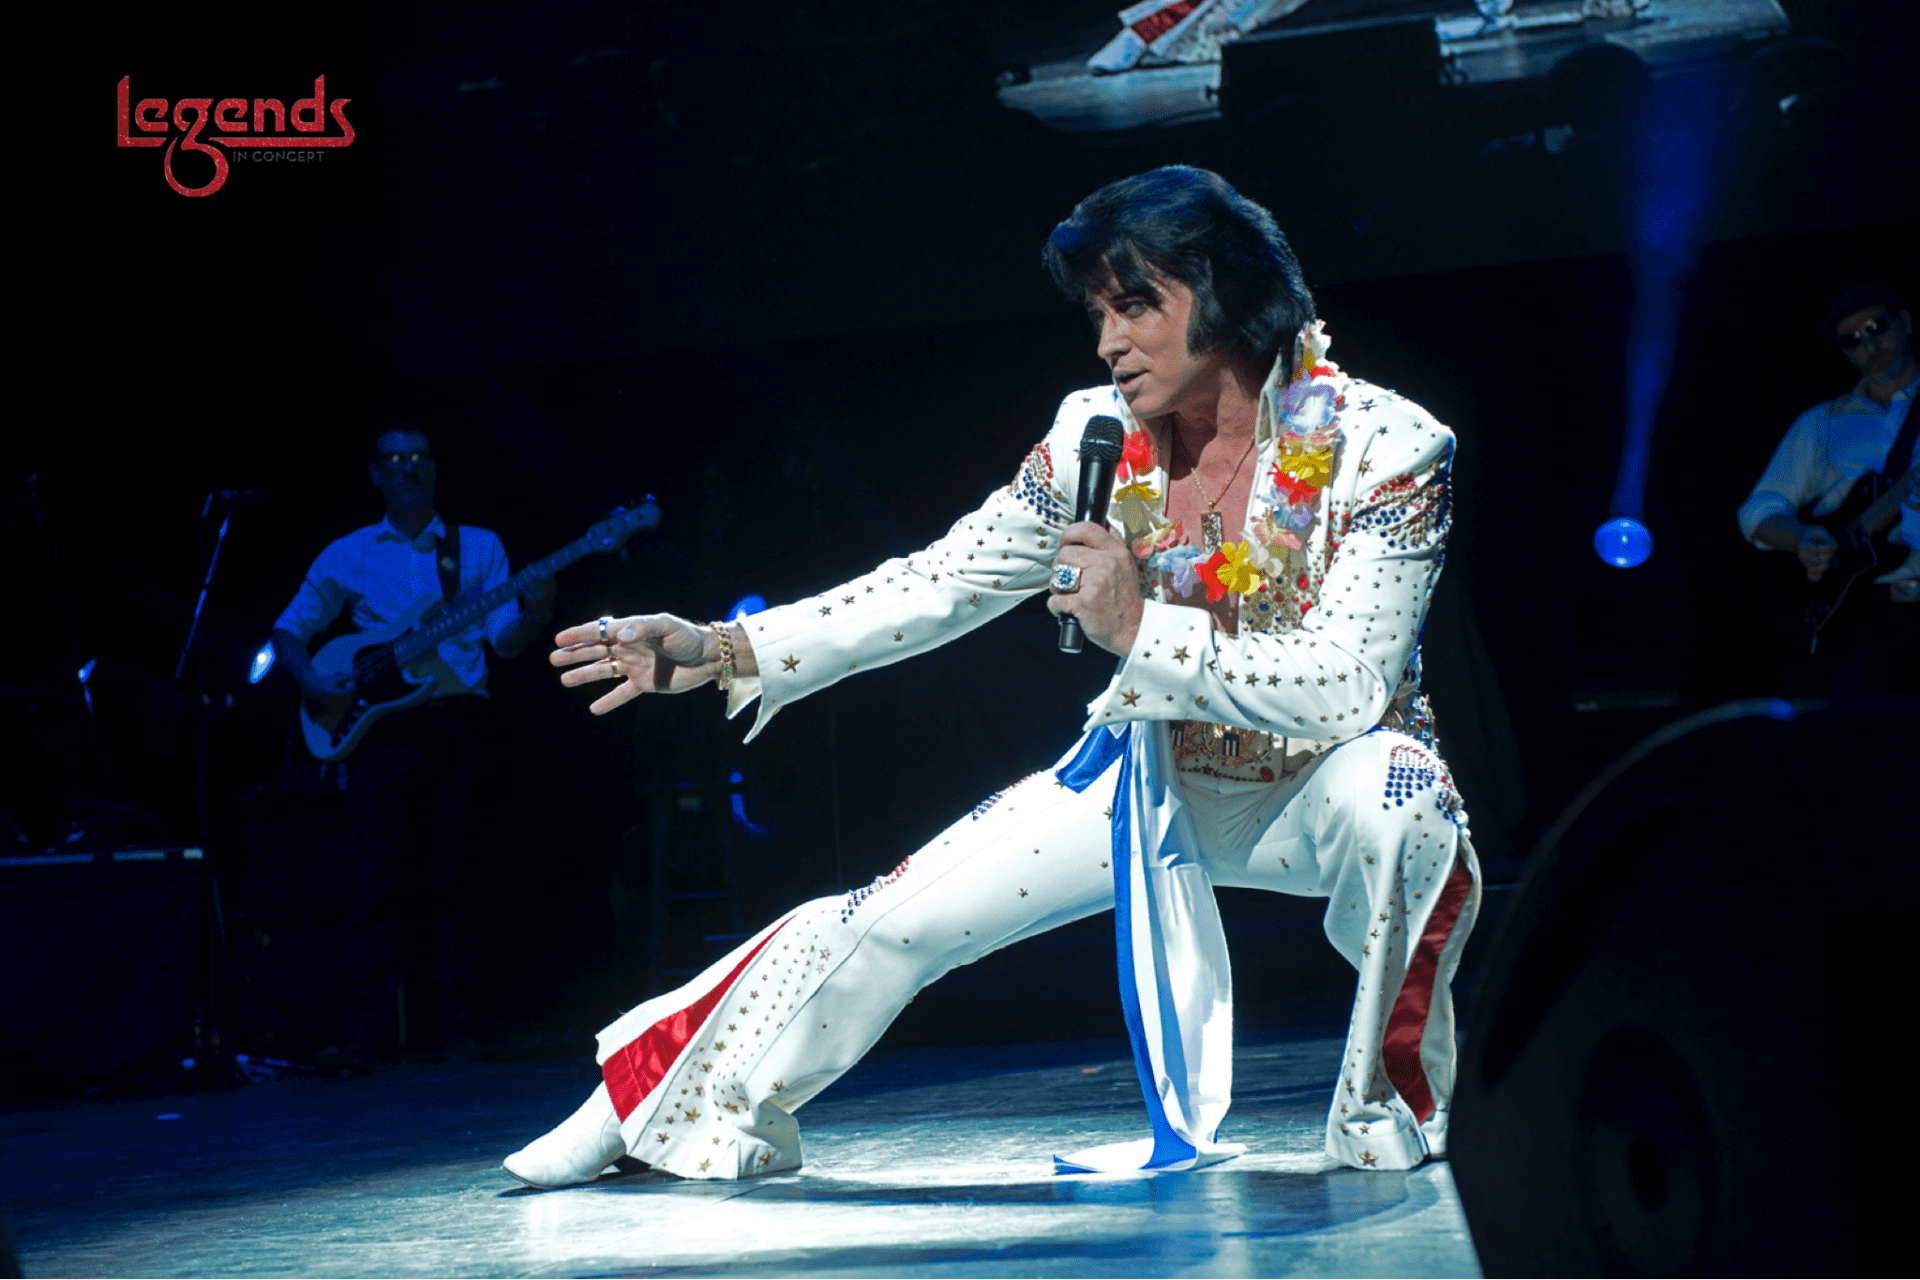 Legends in Concert Bill Cherry Tribute to Elvis Presley